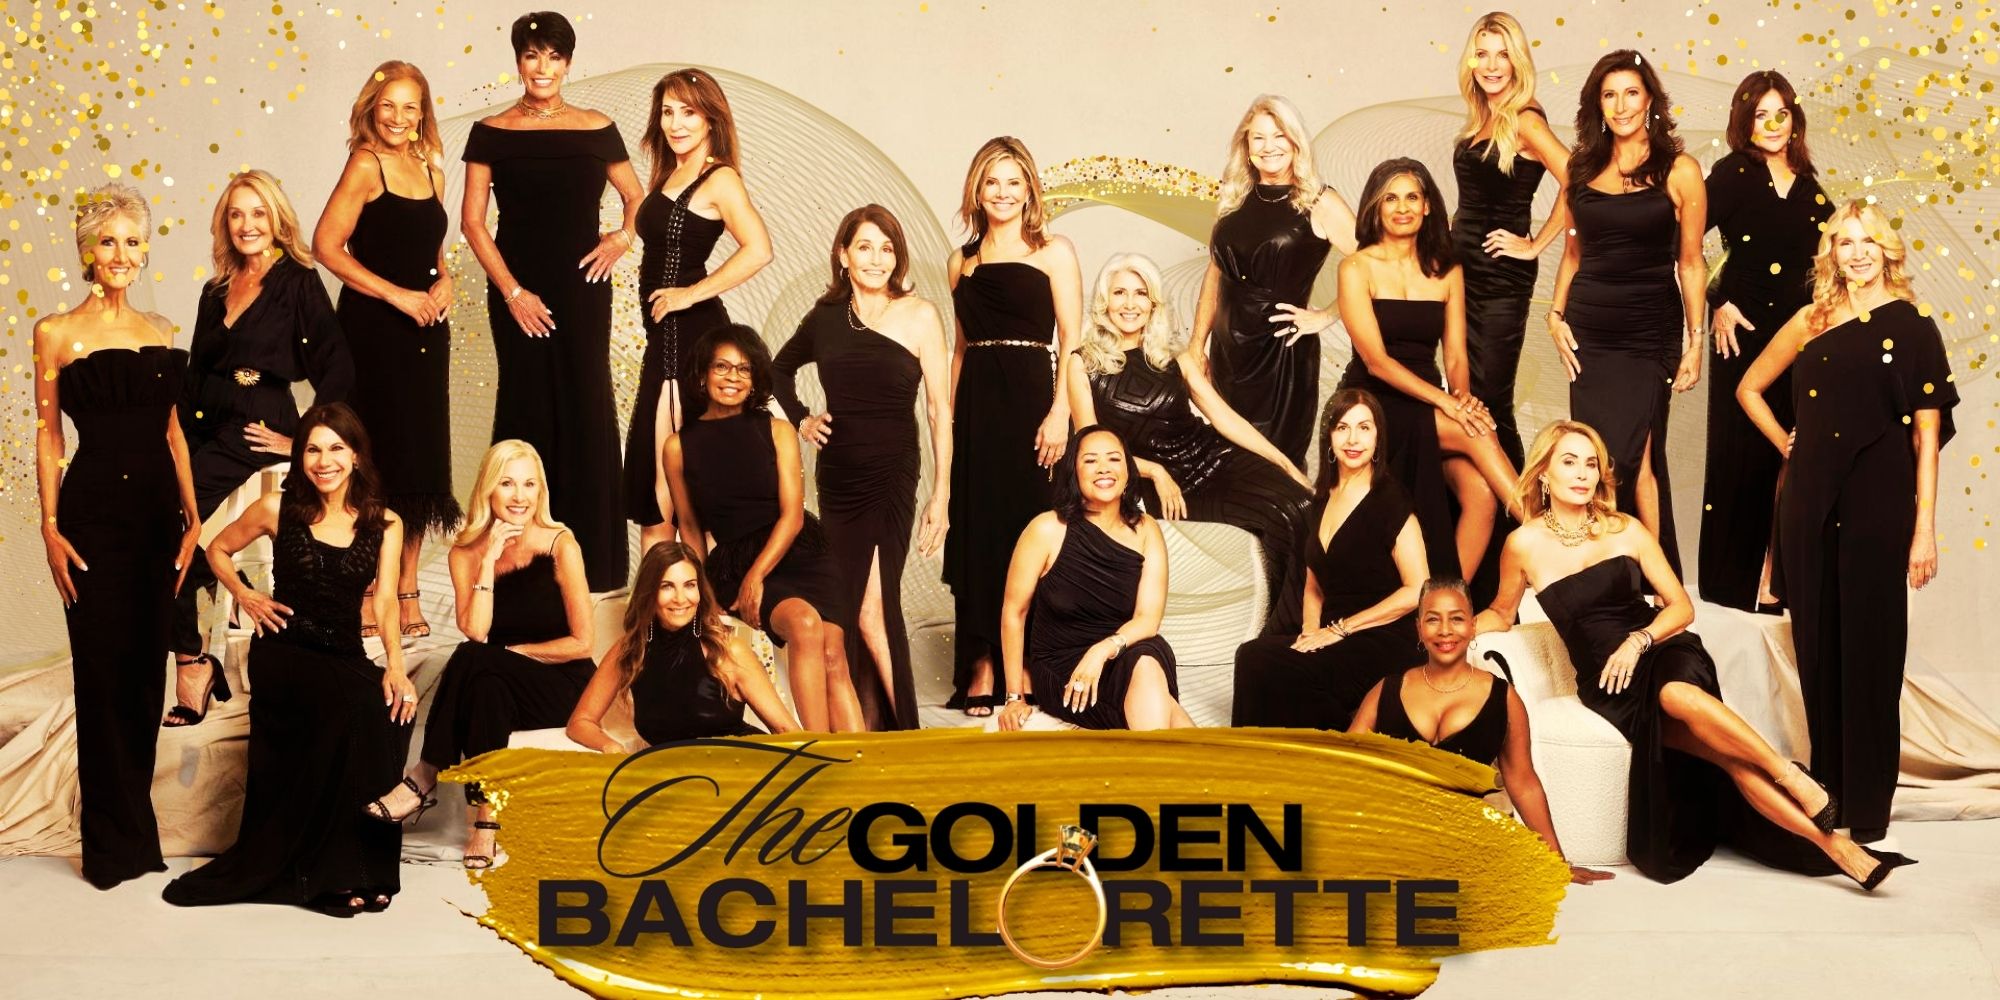 The Golden Bachelorette recibe una actualización importante a medida que aumentan los rumores sobre el casting